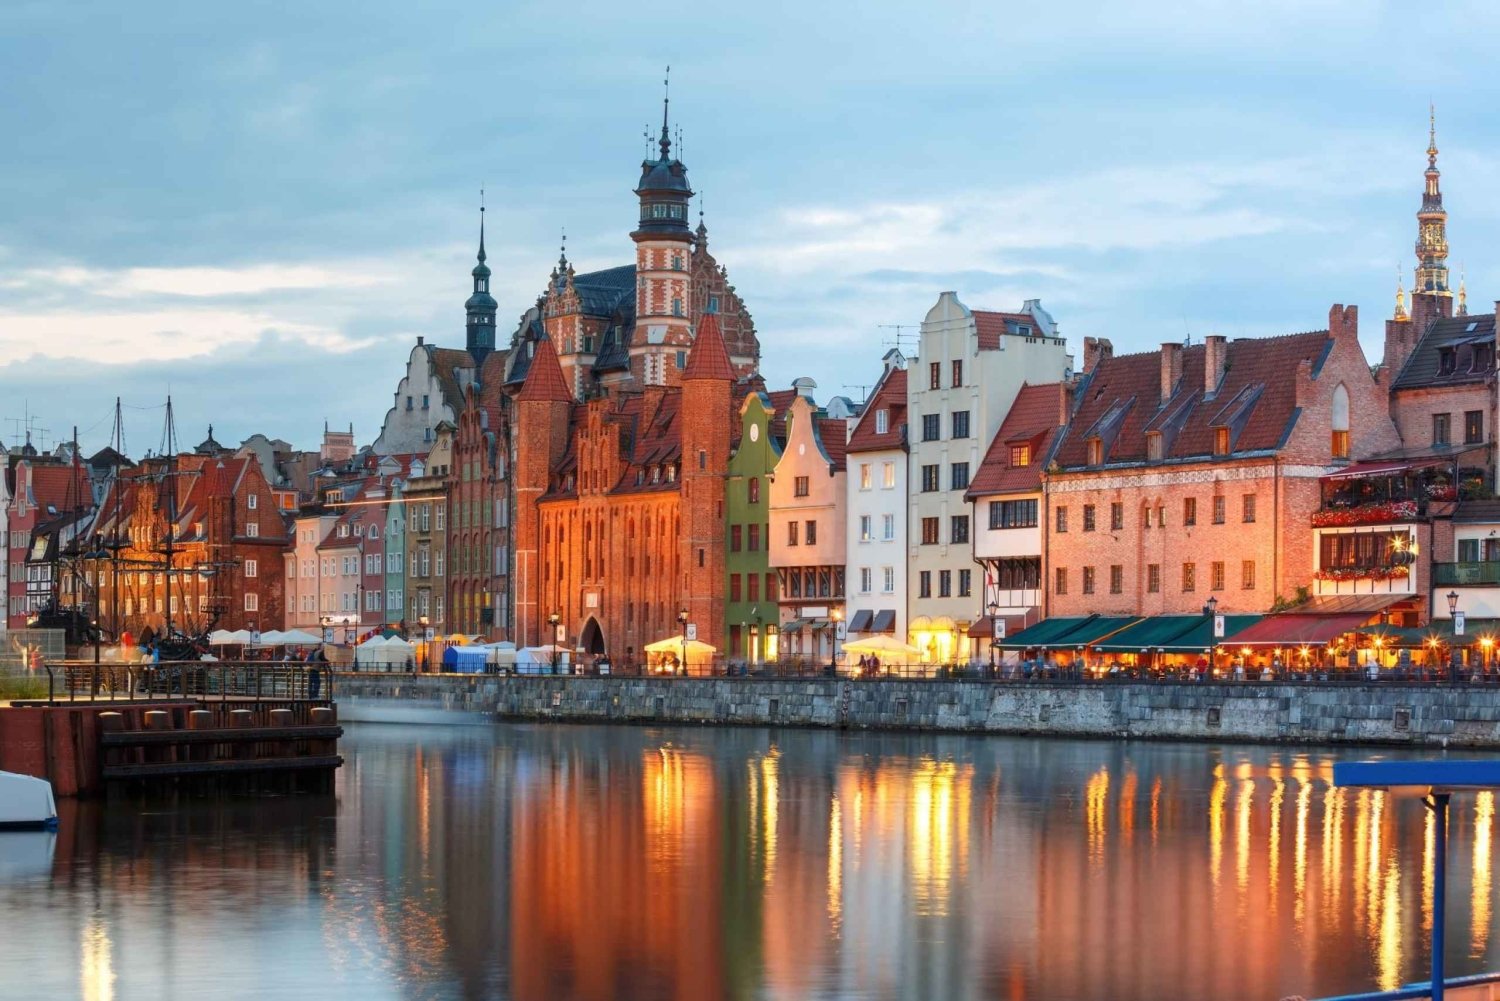 Gdansk: Express wandeling met een local in 60 minuten